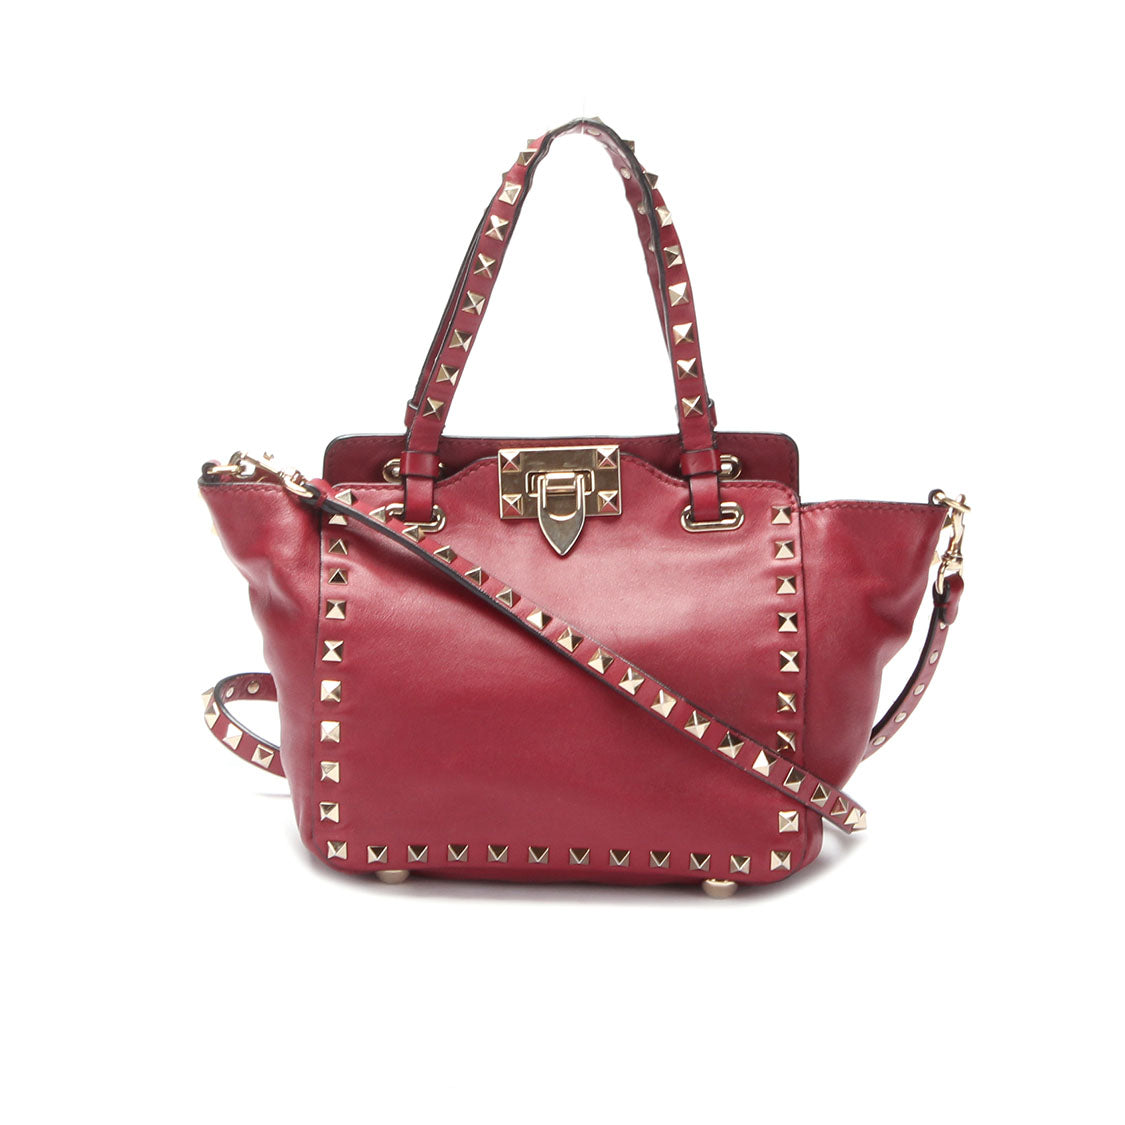  Red Rockstud Handbag